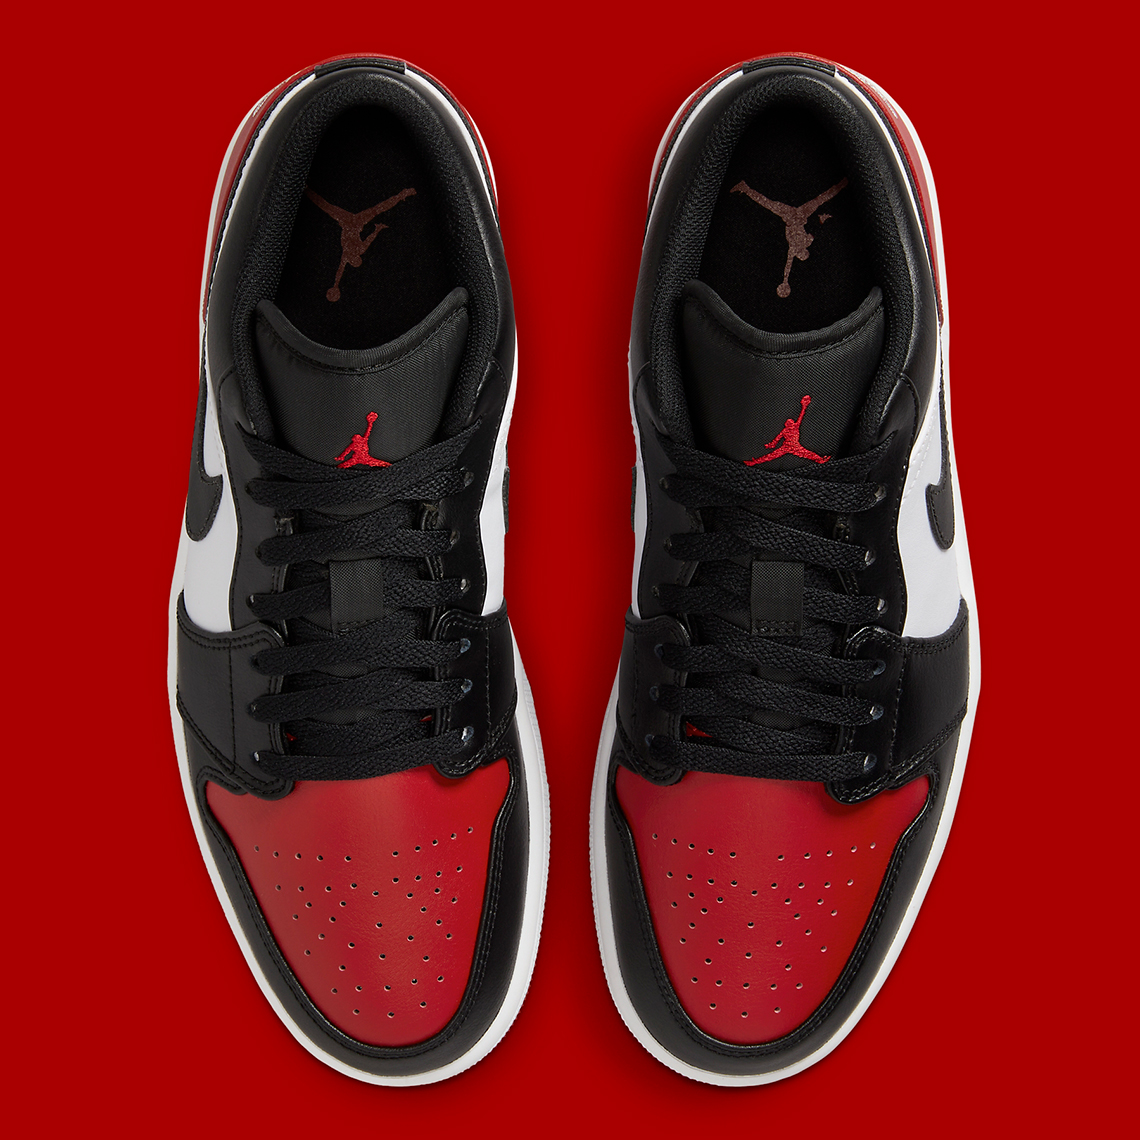 Air Jordan 1 Low Bred Toe 553558-161 | SneakerNews.com